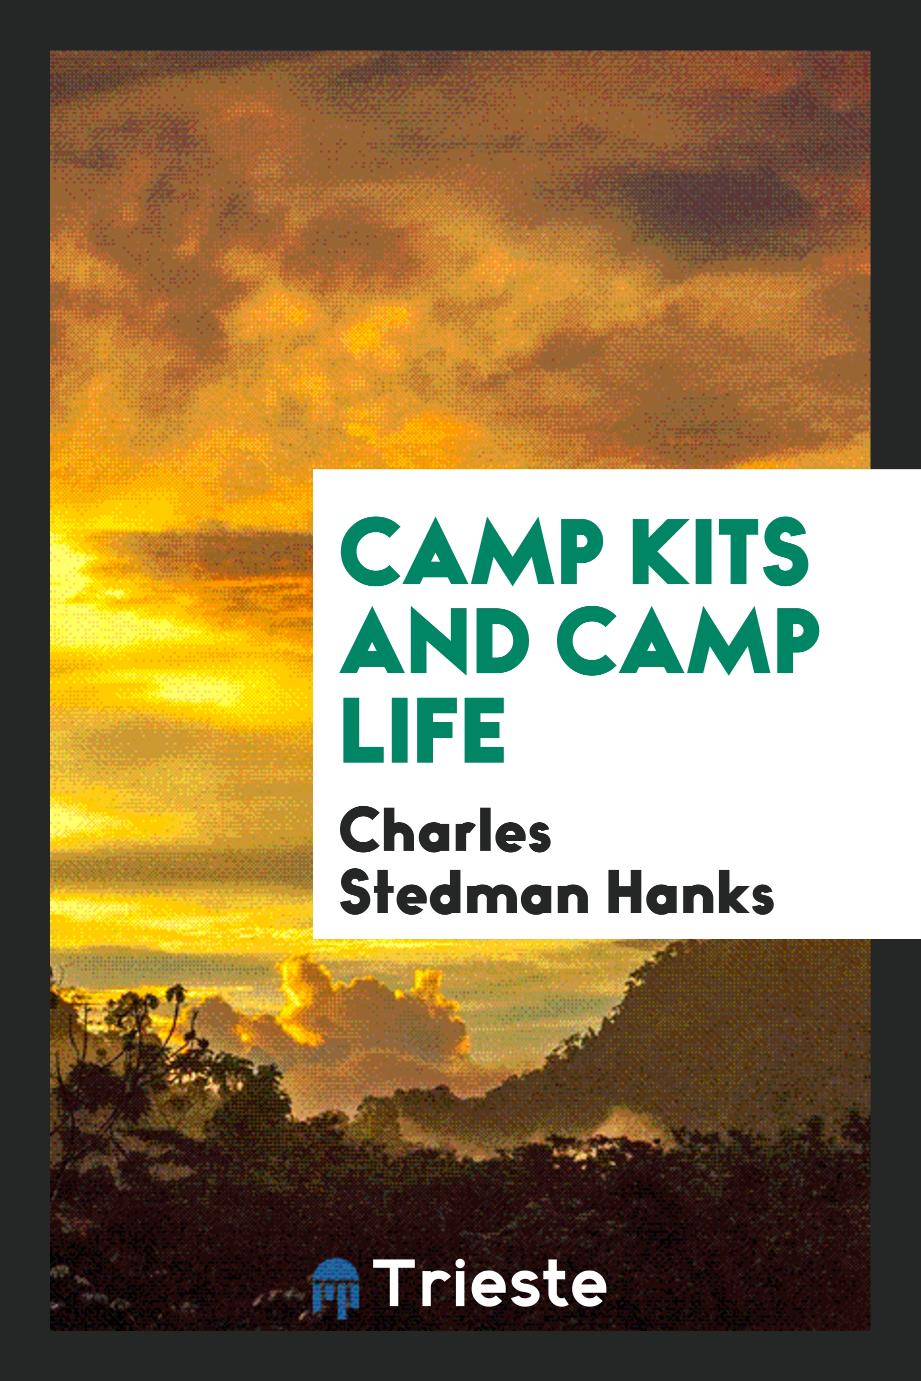 Camp kits and camp life